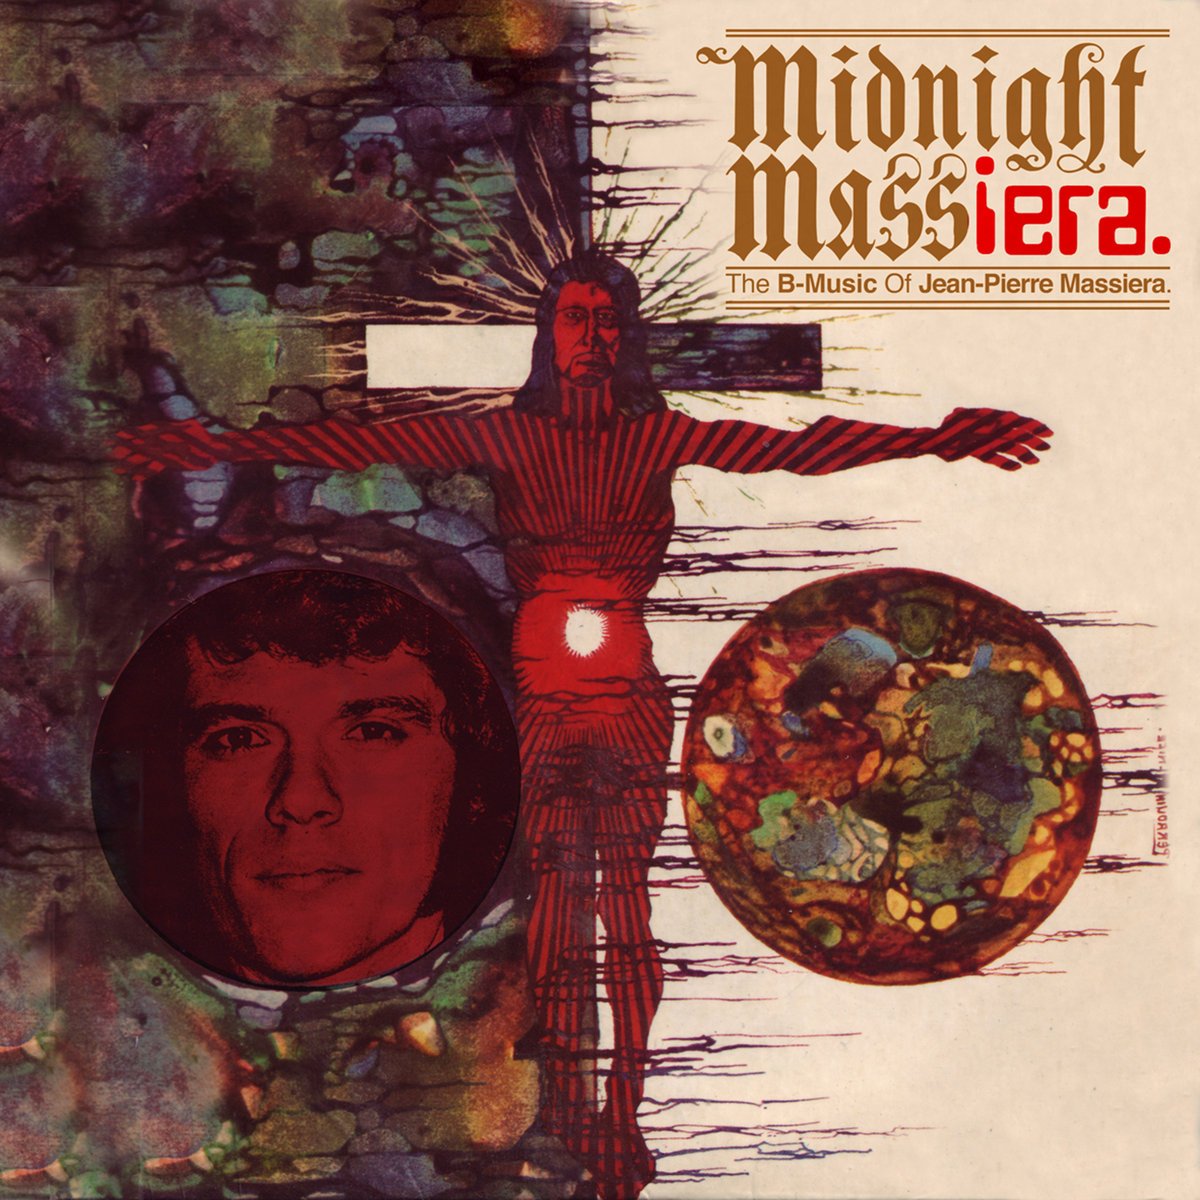 Massiera, Jean-Pierre "Midnight Massiera: The B-Music Of ..."